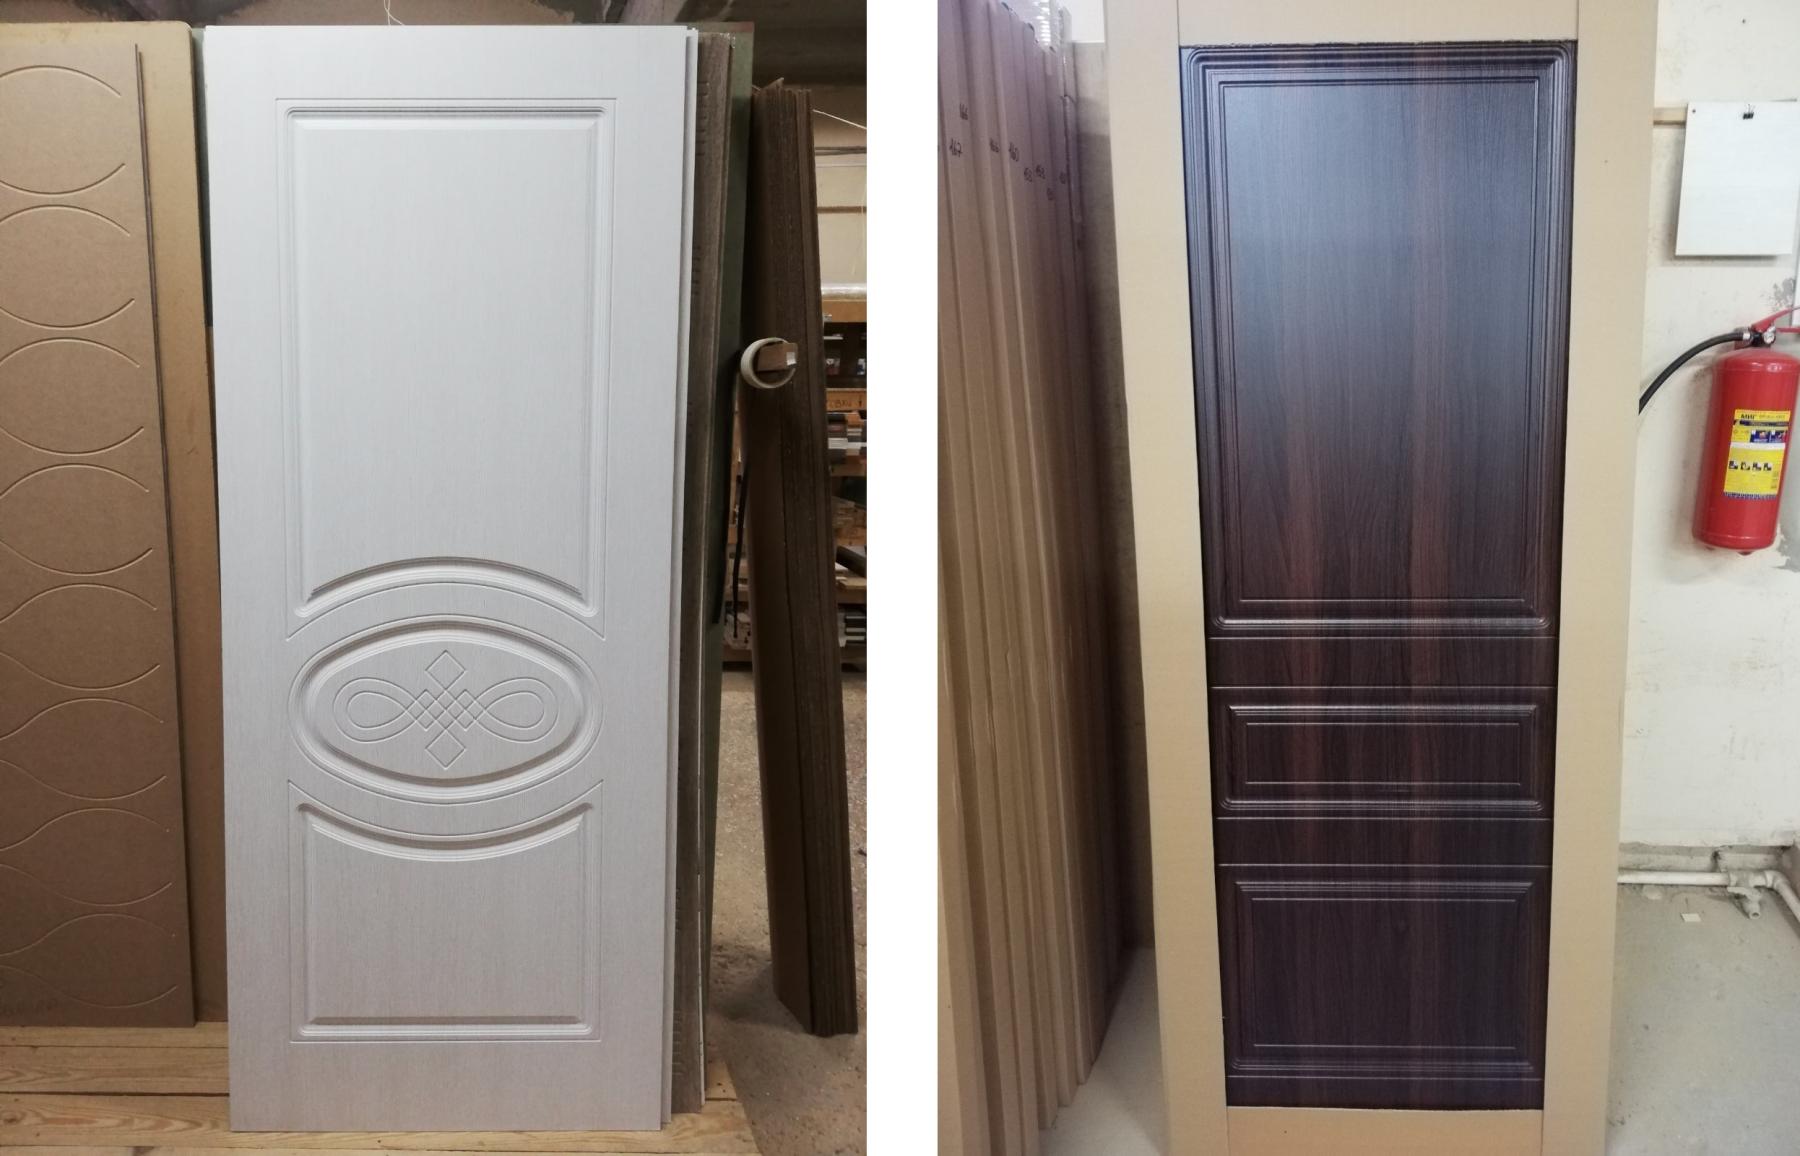 Фрезерованные двери от производителя Ostium Doors, готовые к установке